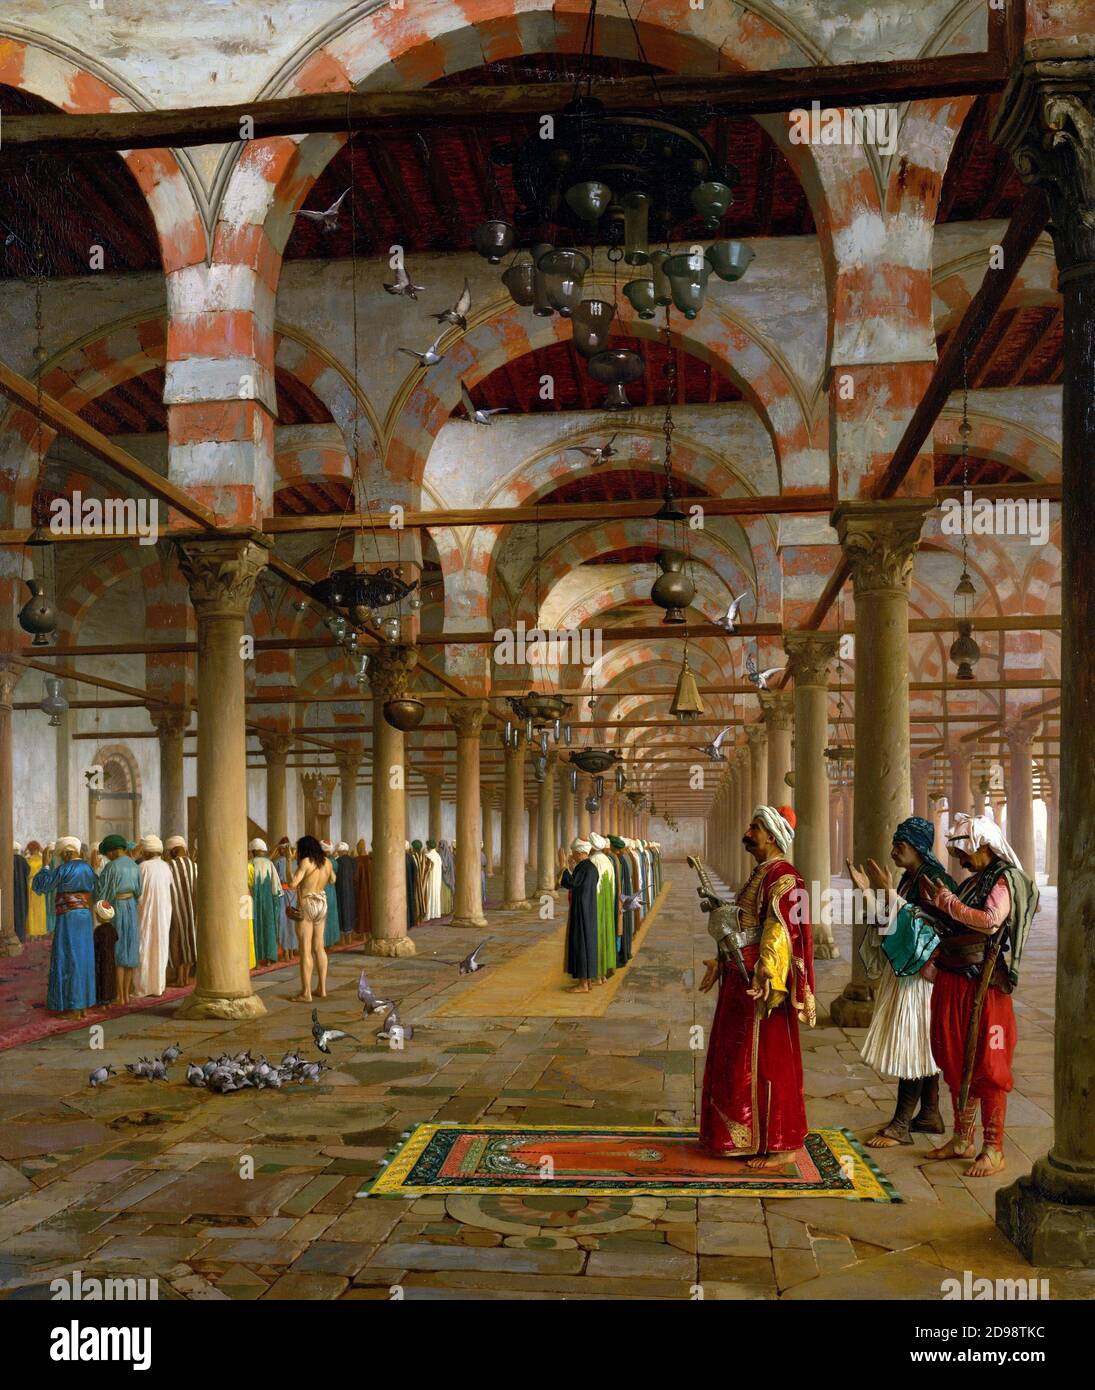 Preghiera nella moschea dell'artista orientalista francese Jean-Léon Gérôme (1824-1904), olio su tela, 1871 Foto Stock